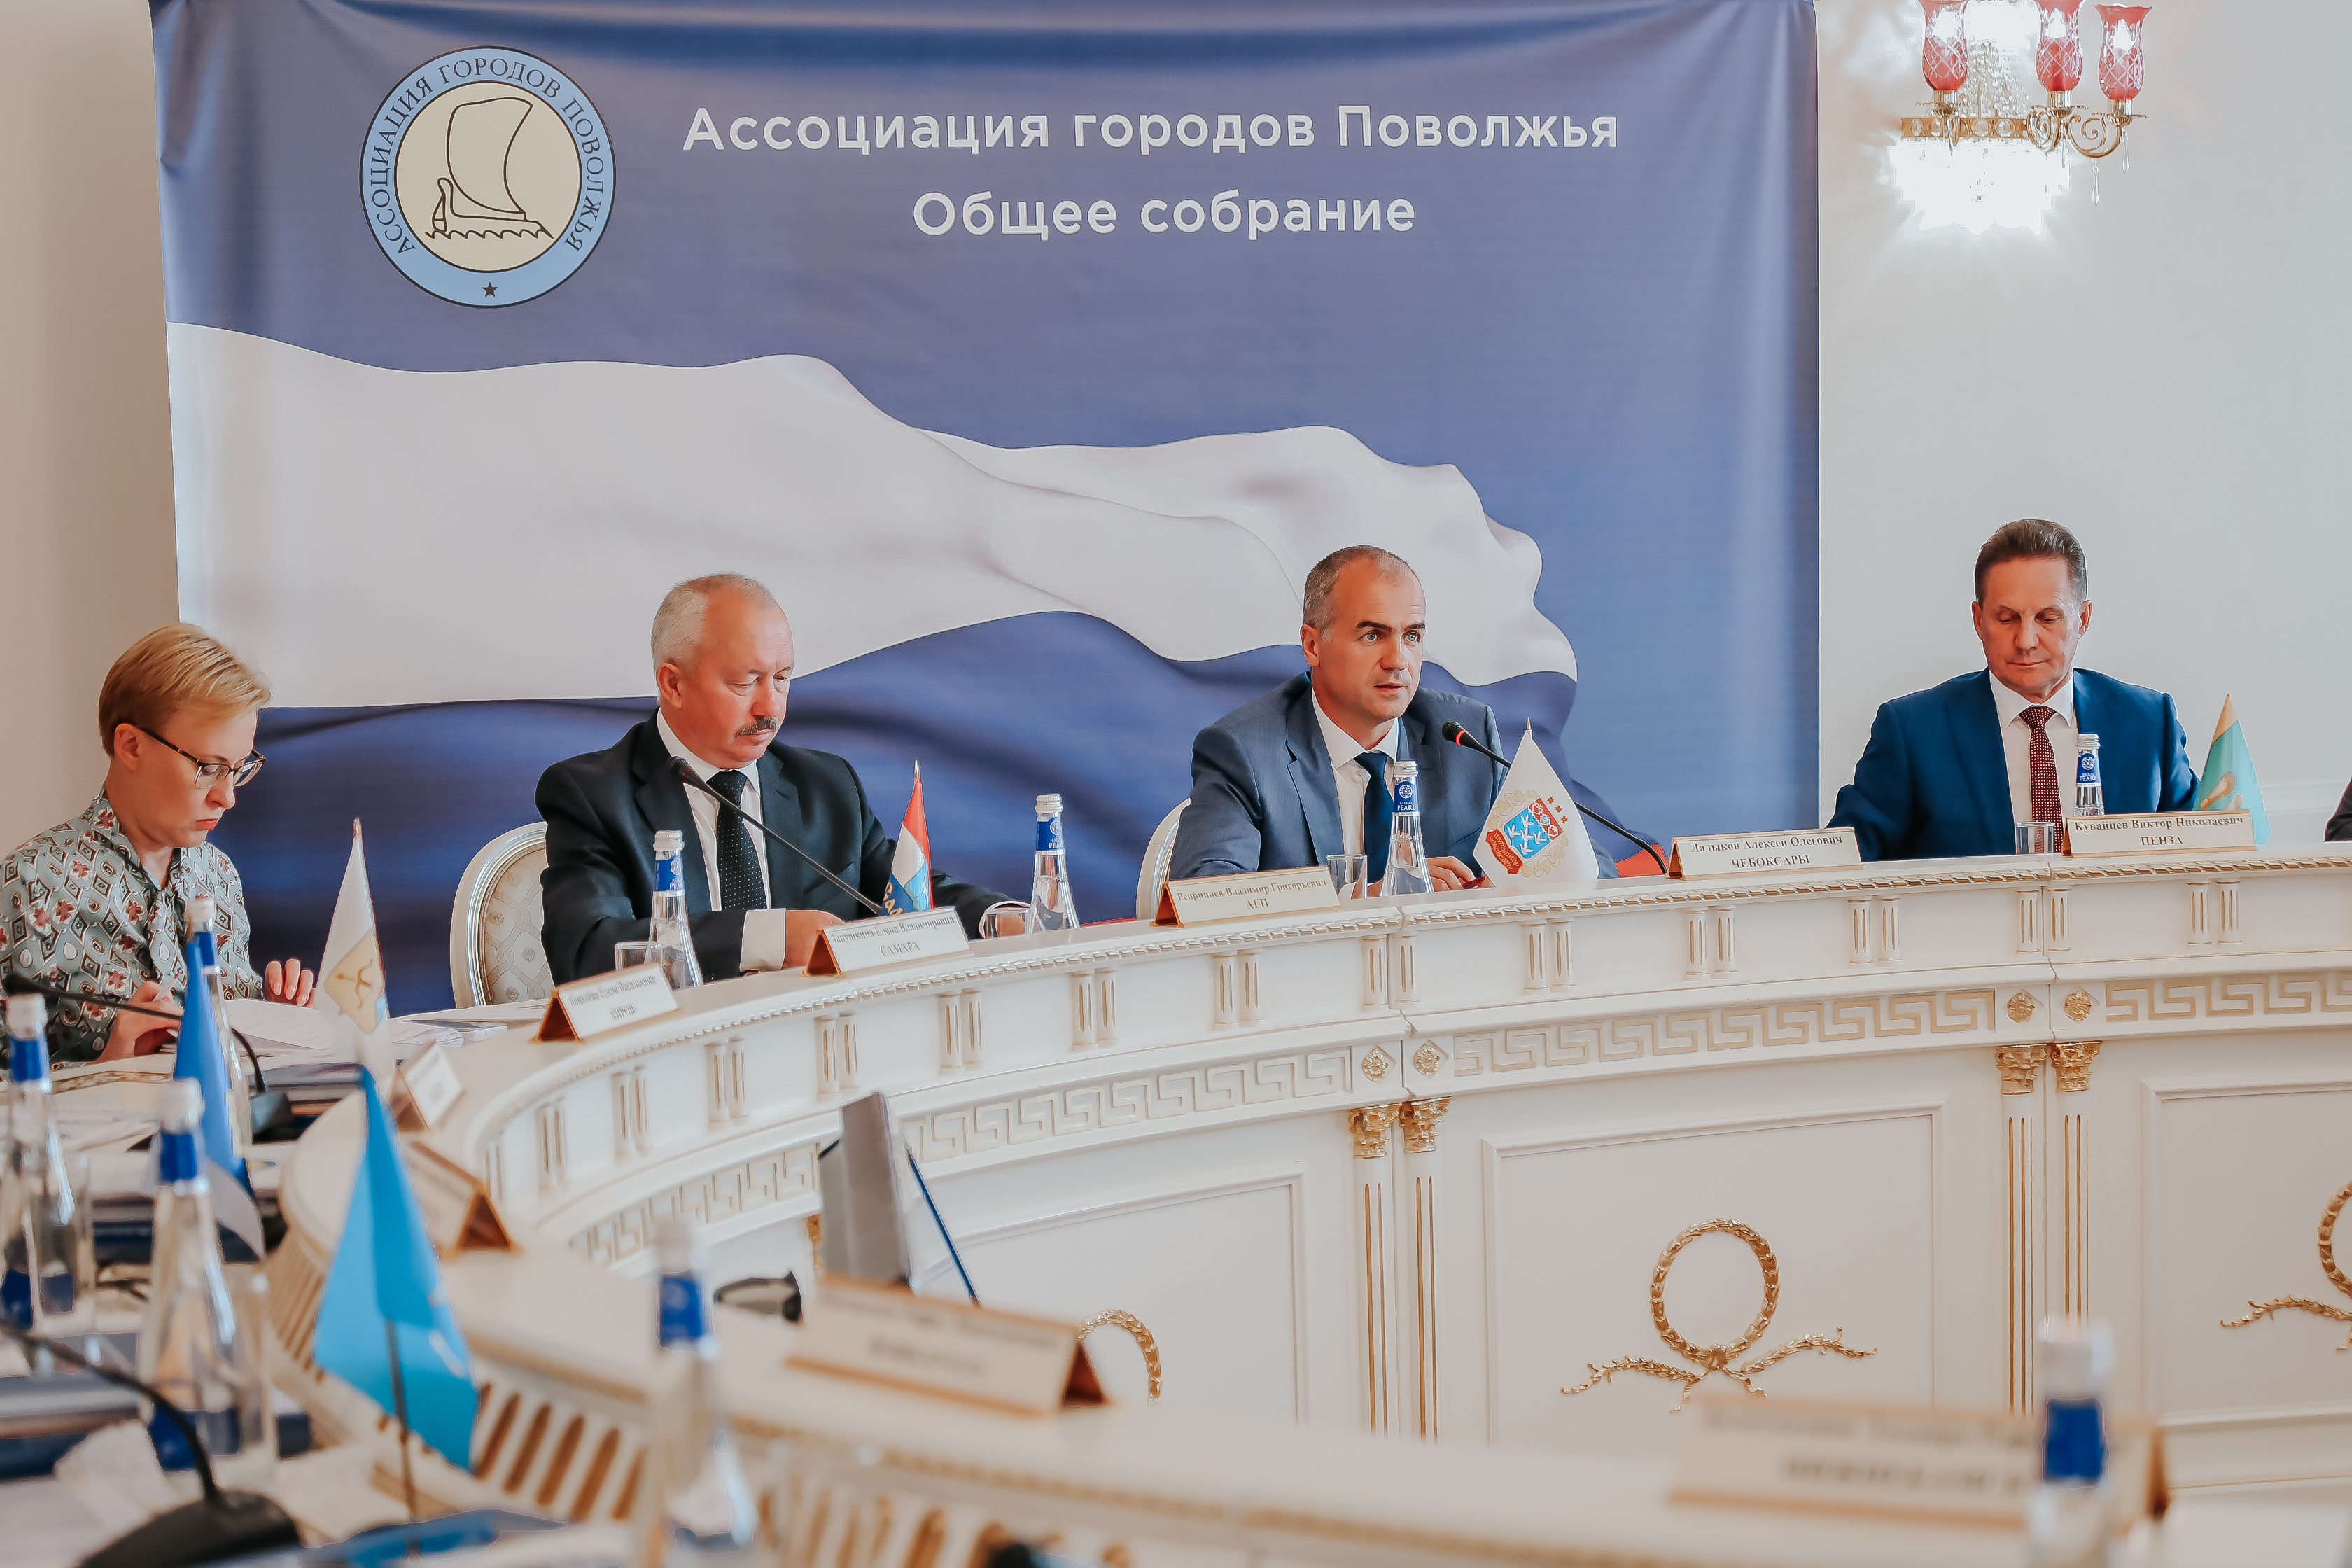 Заседание Правления АГП. 23 августа 2019 года, город Казань.